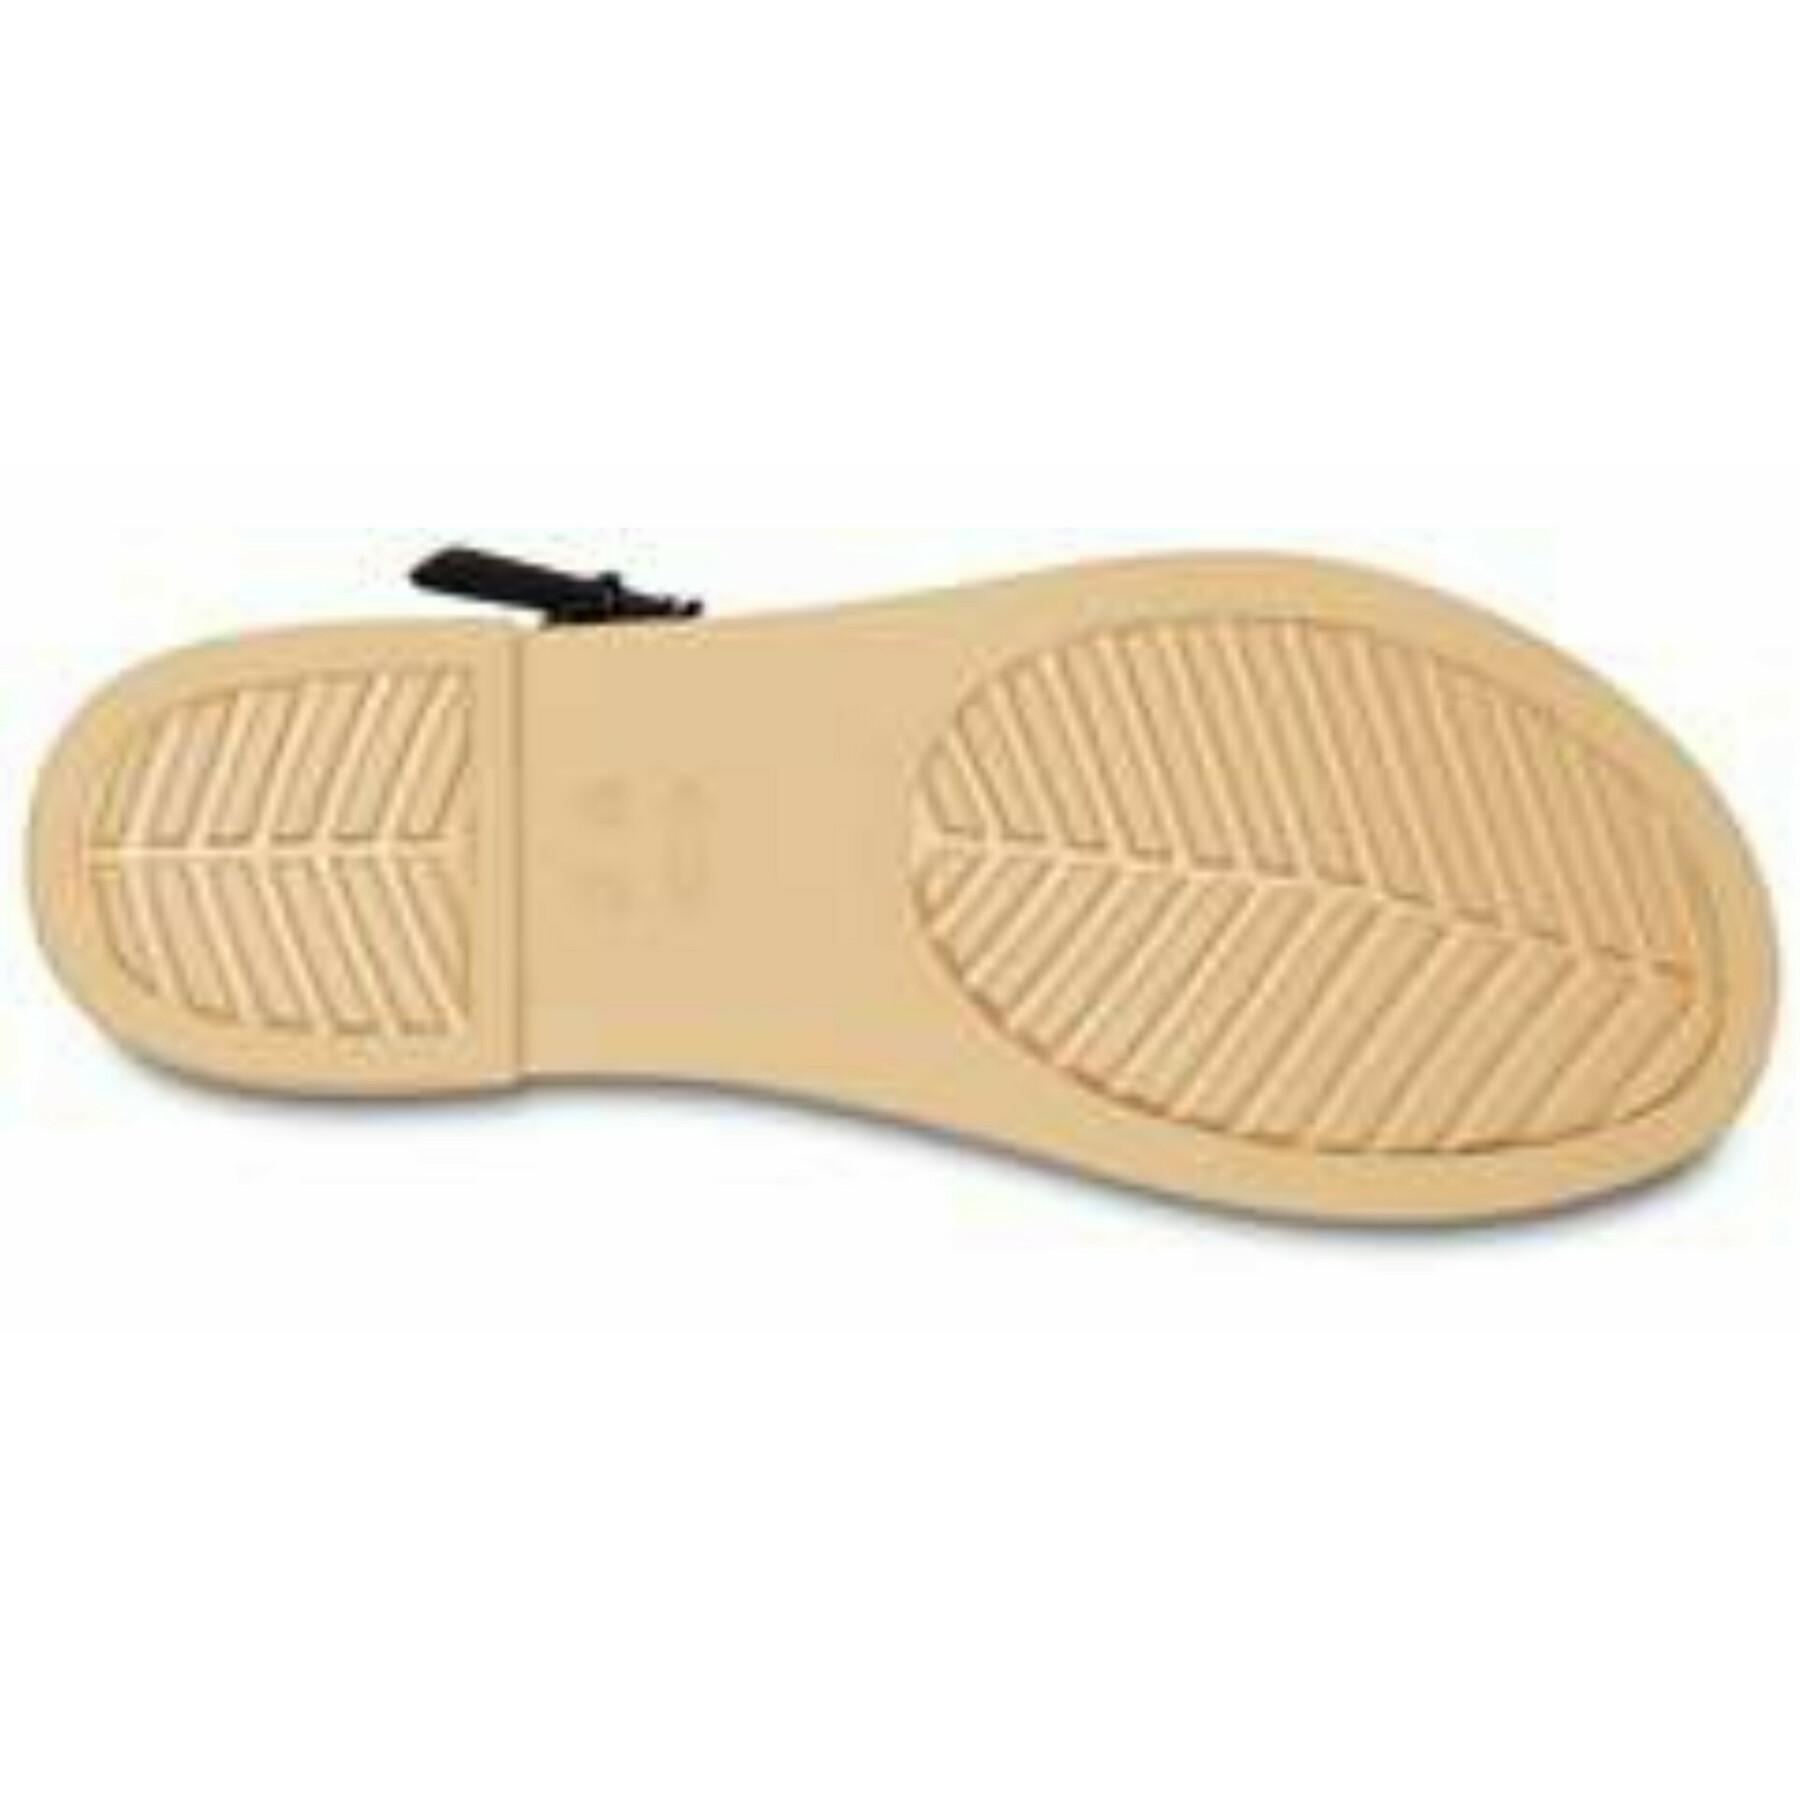 Women's sandals Crocs tulum